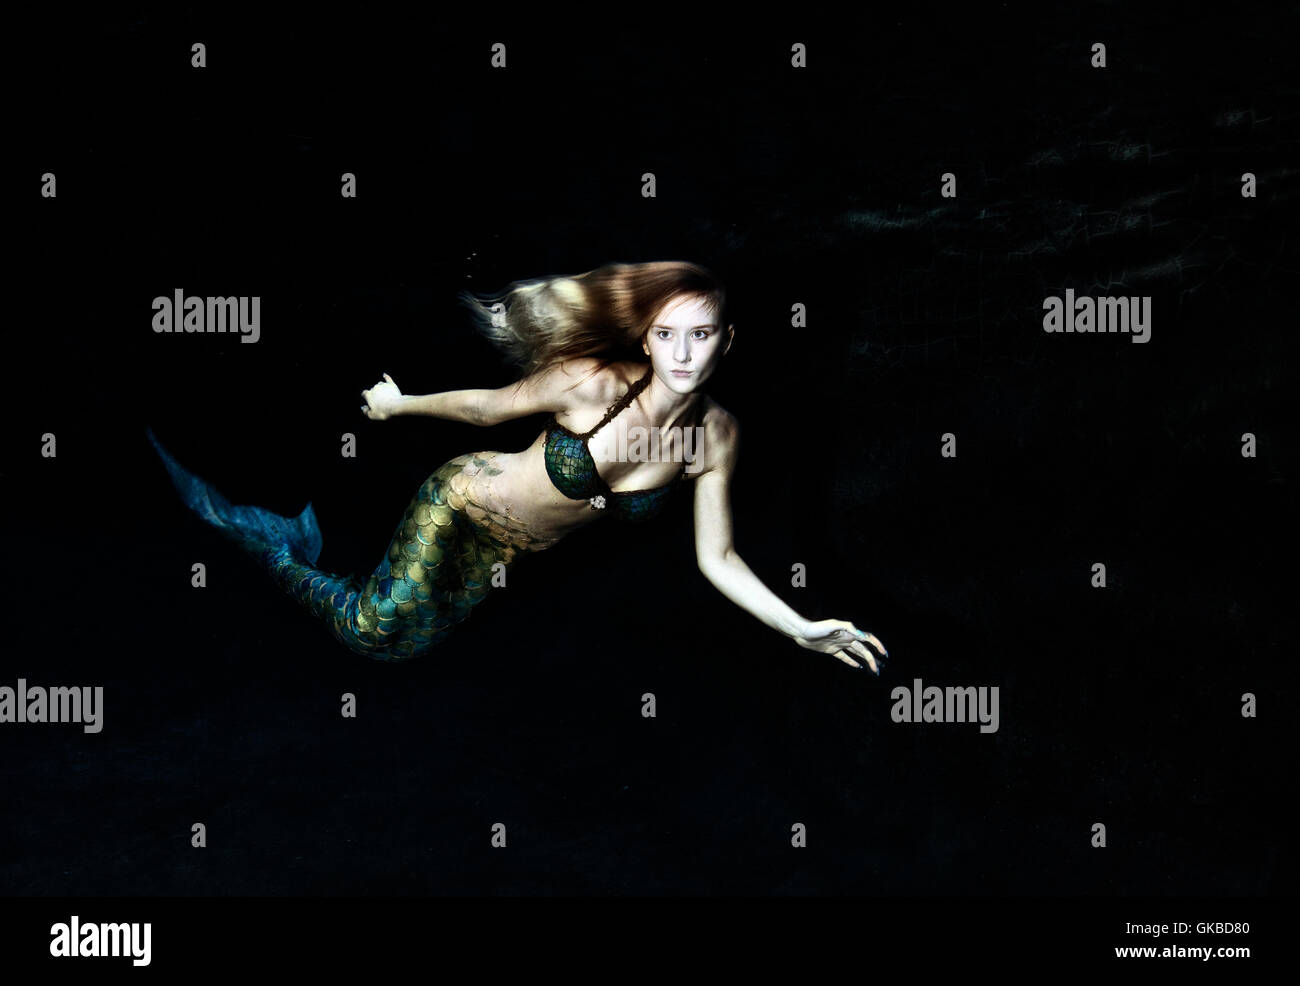 La natation dans l'eau sombre sirène Banque D'Images